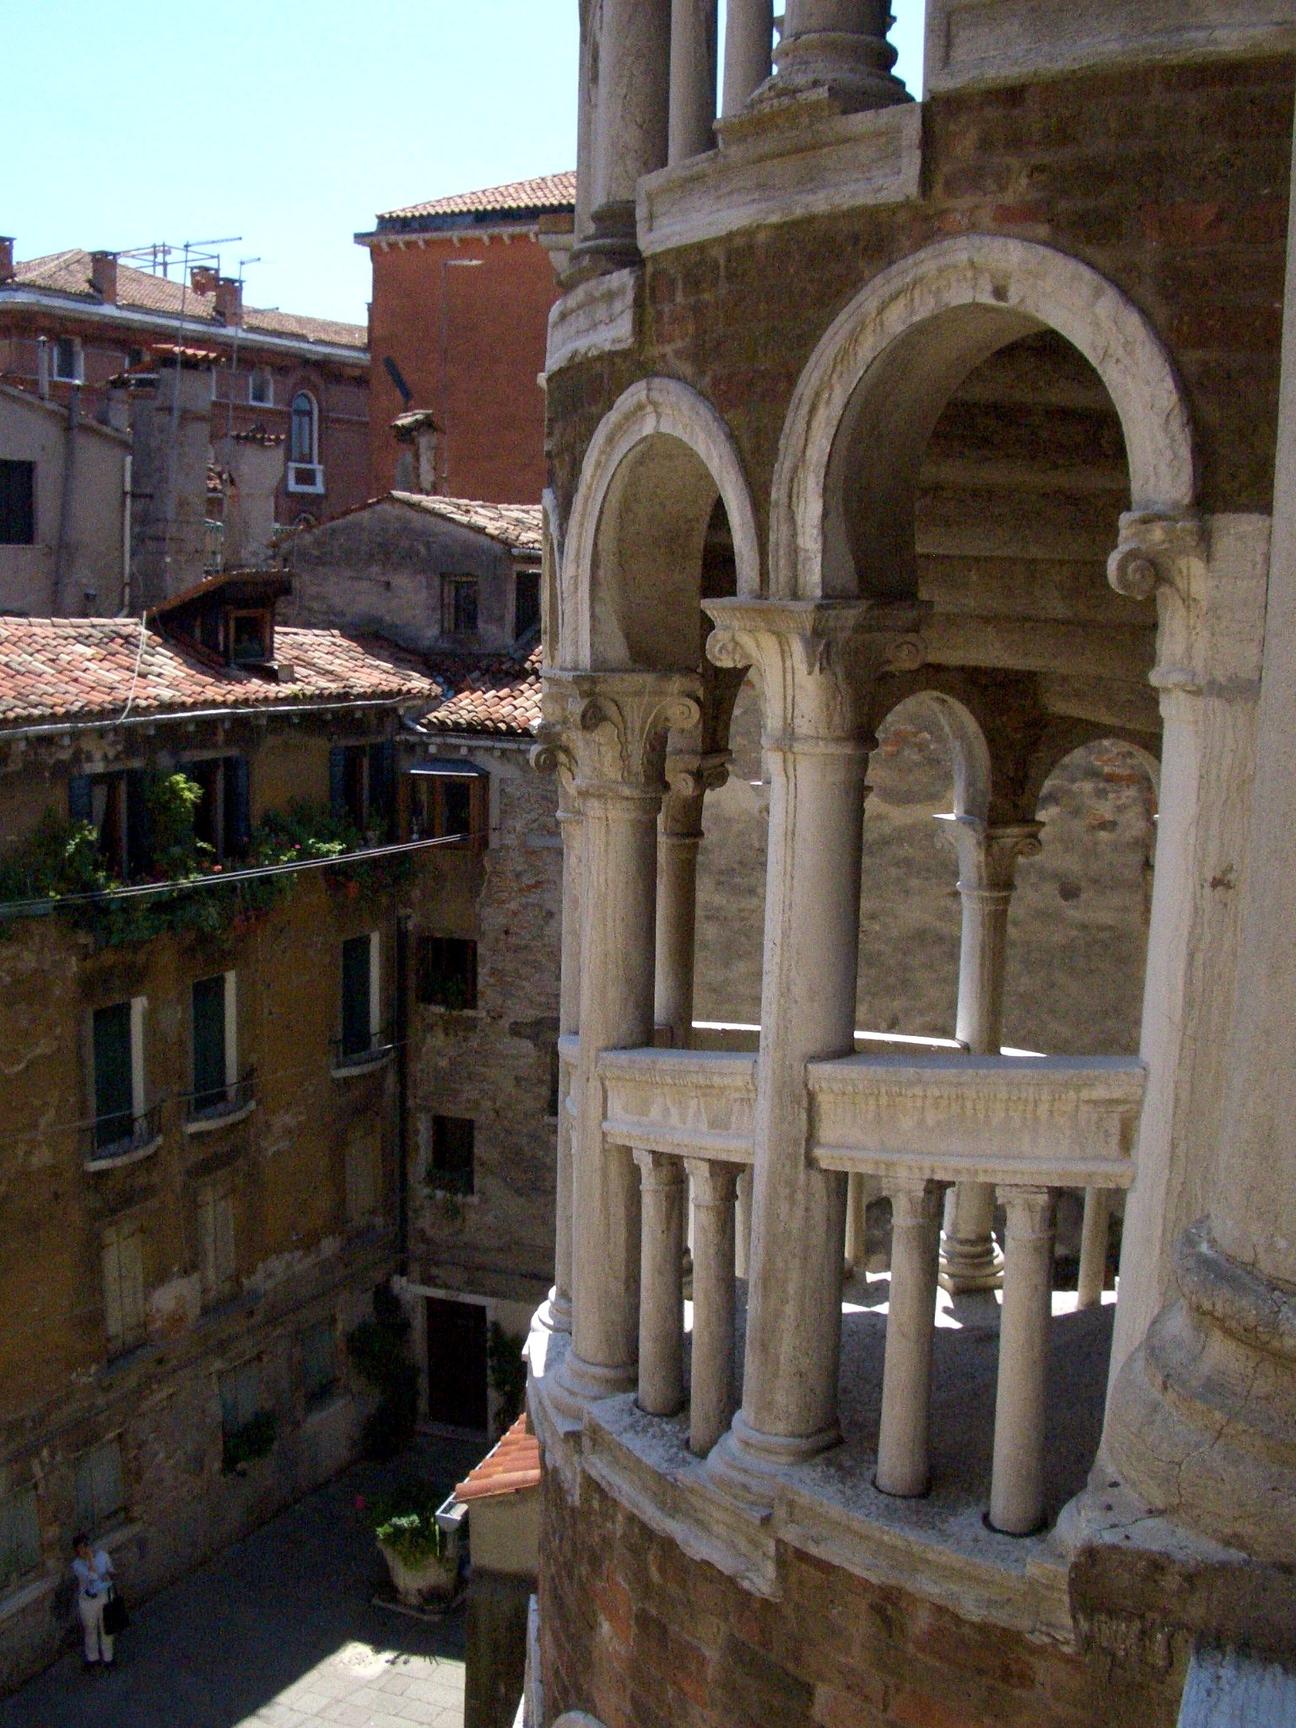 A photo of Contarini del Bovolo Palace